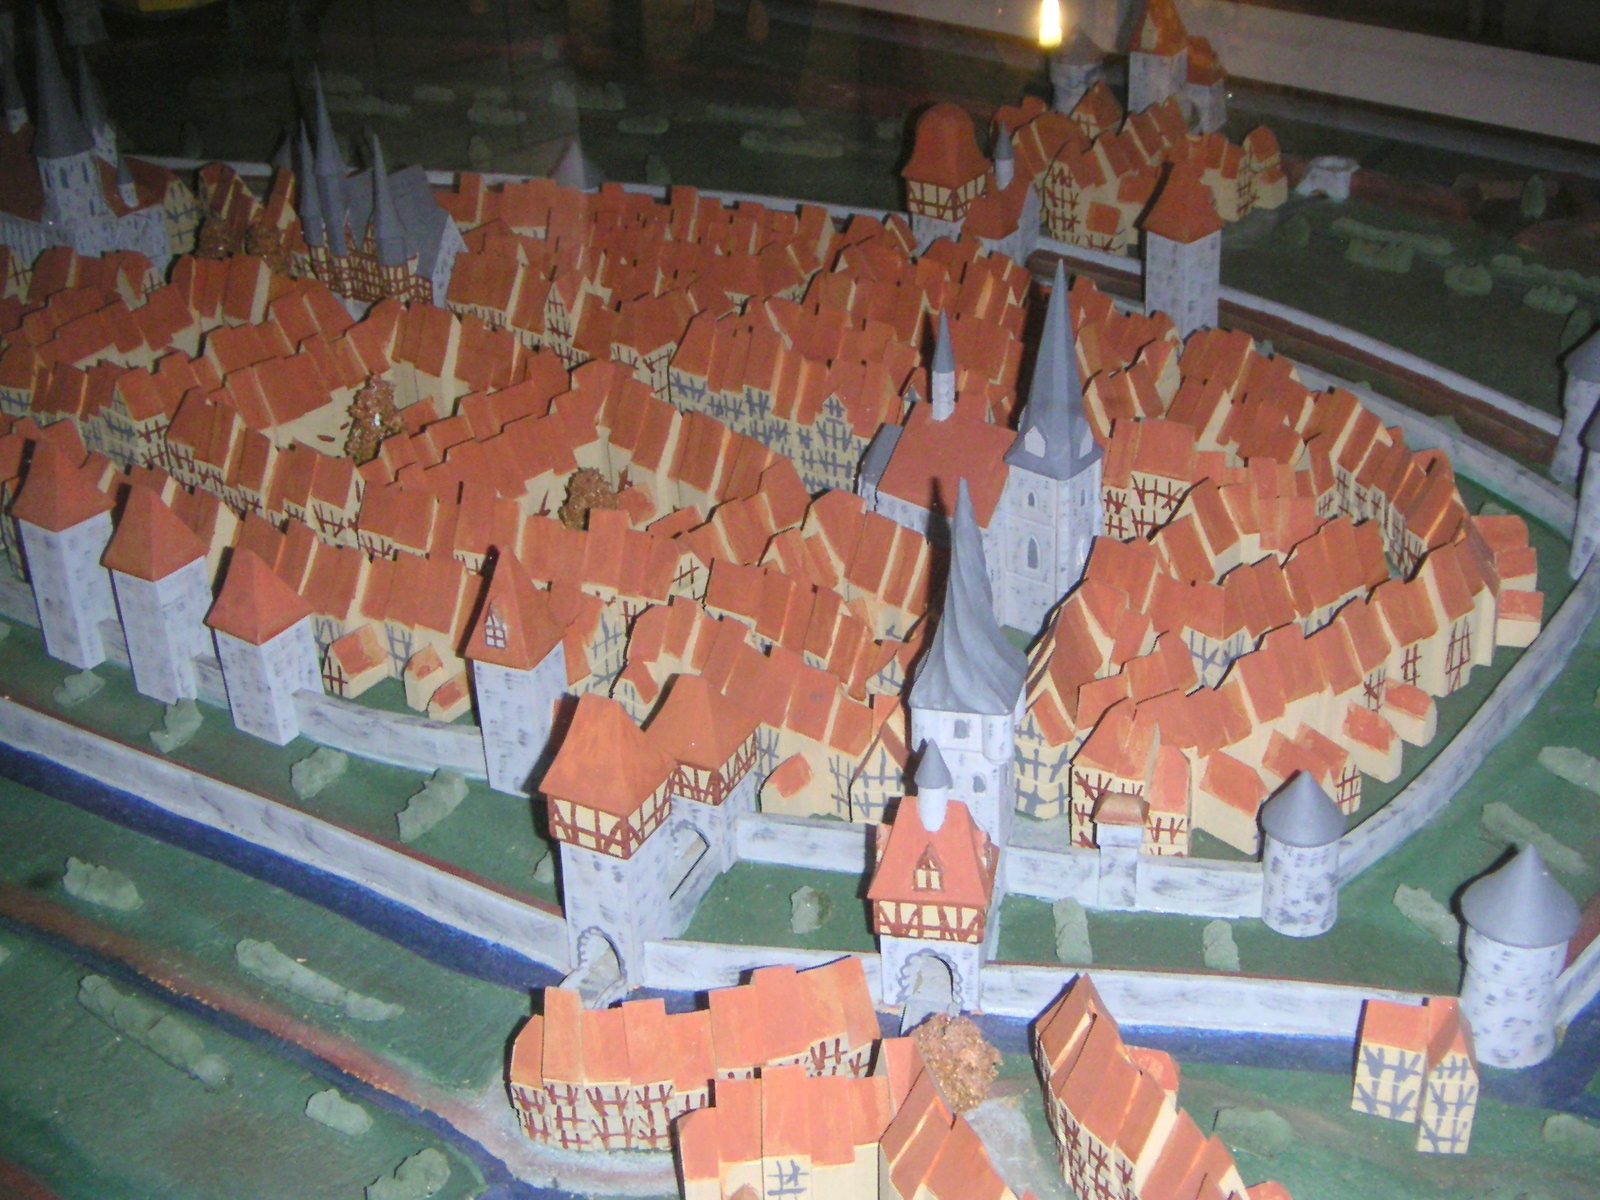 Das Duderstädter Rathaus in der Marktstr. 66, Stadtmodell